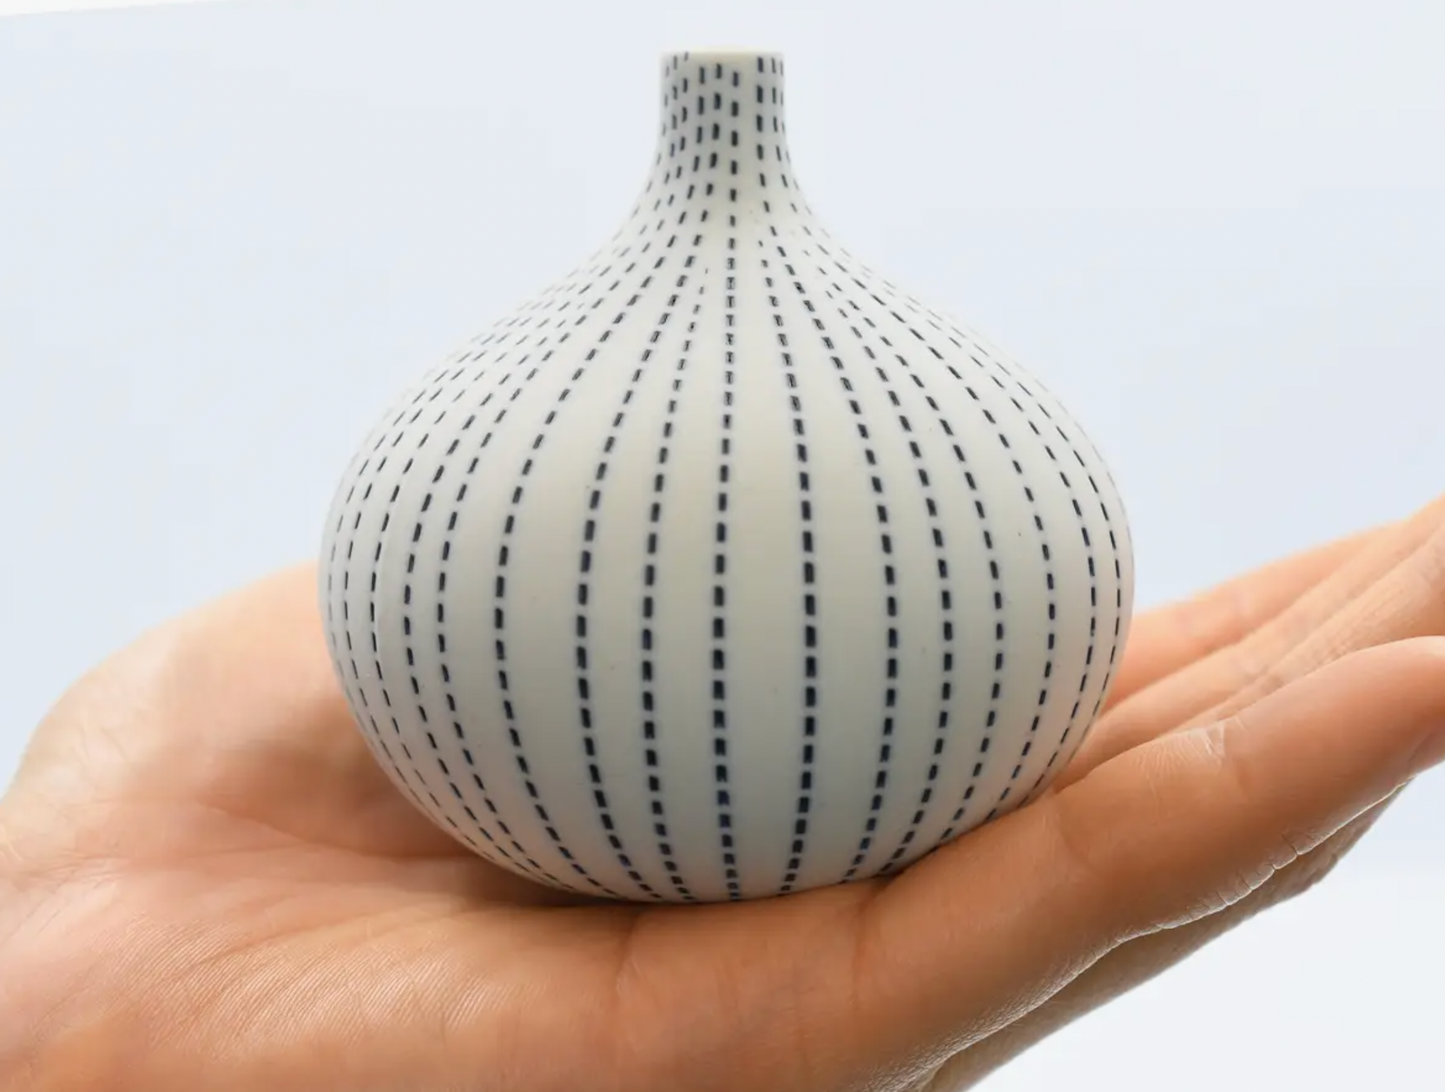 Tiny Bud Vase